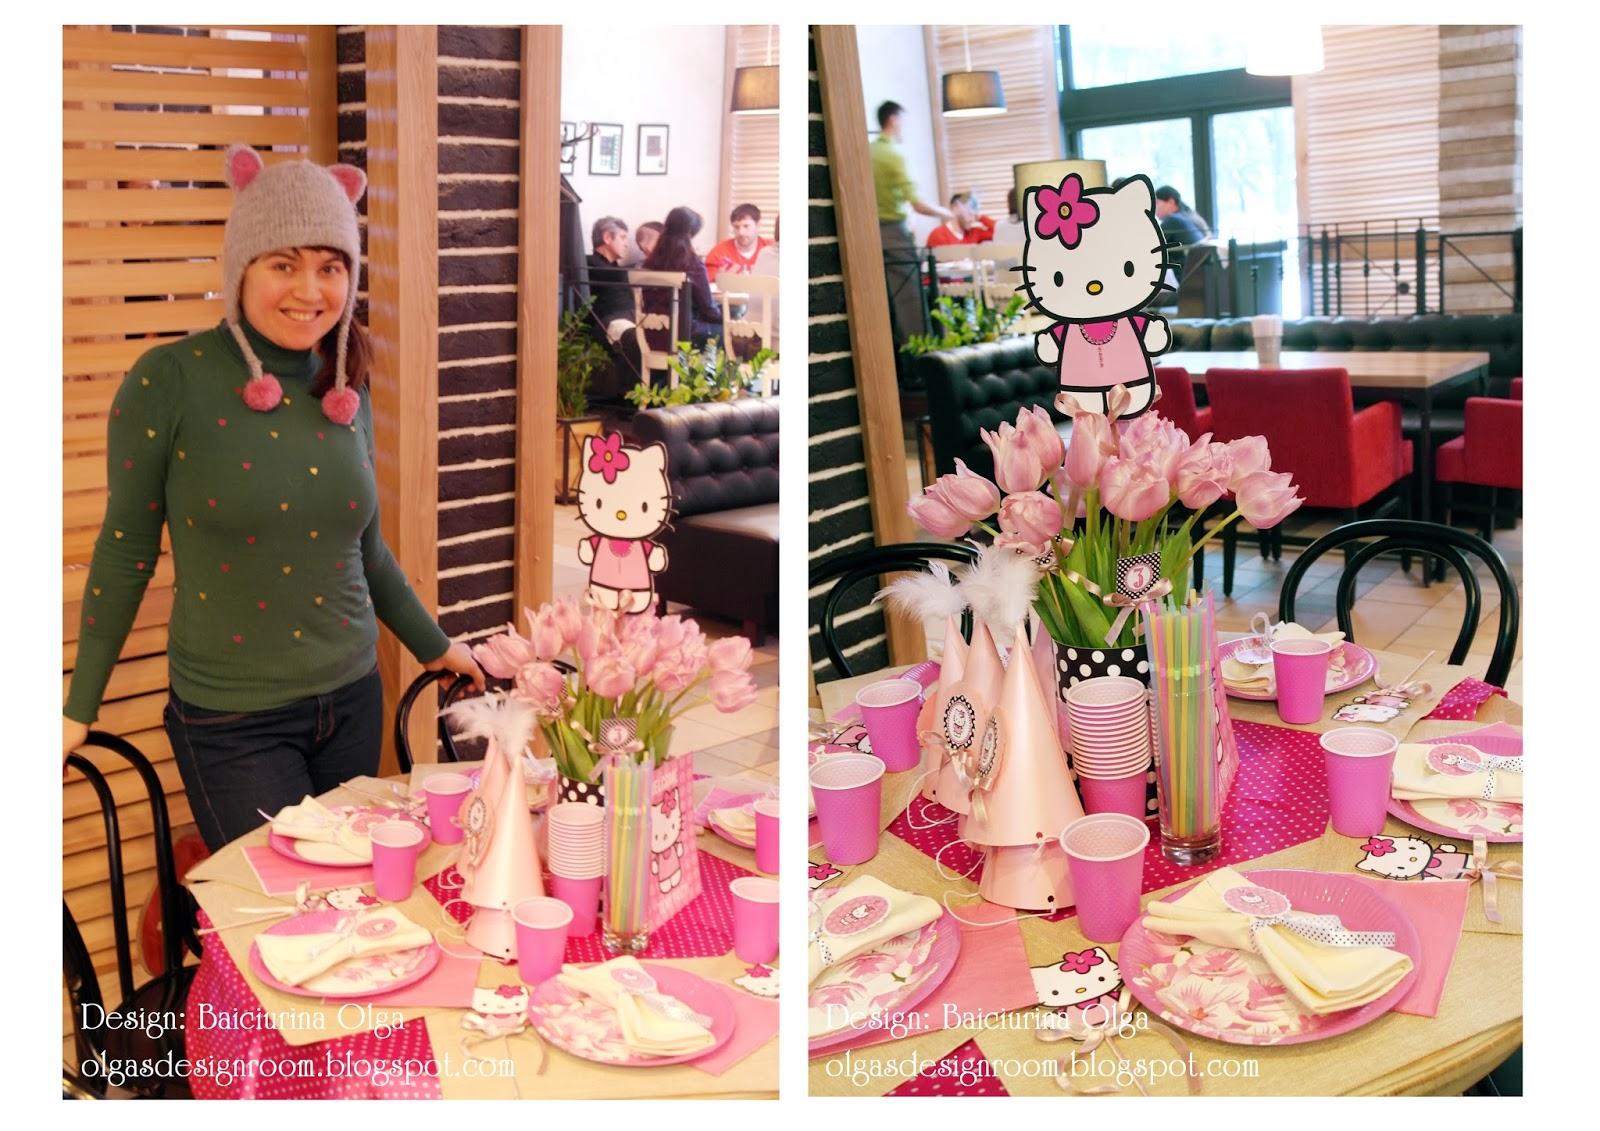 Petreceri pentru copii în stilul Hello Kitty. Idei de la Olga Baiciurina